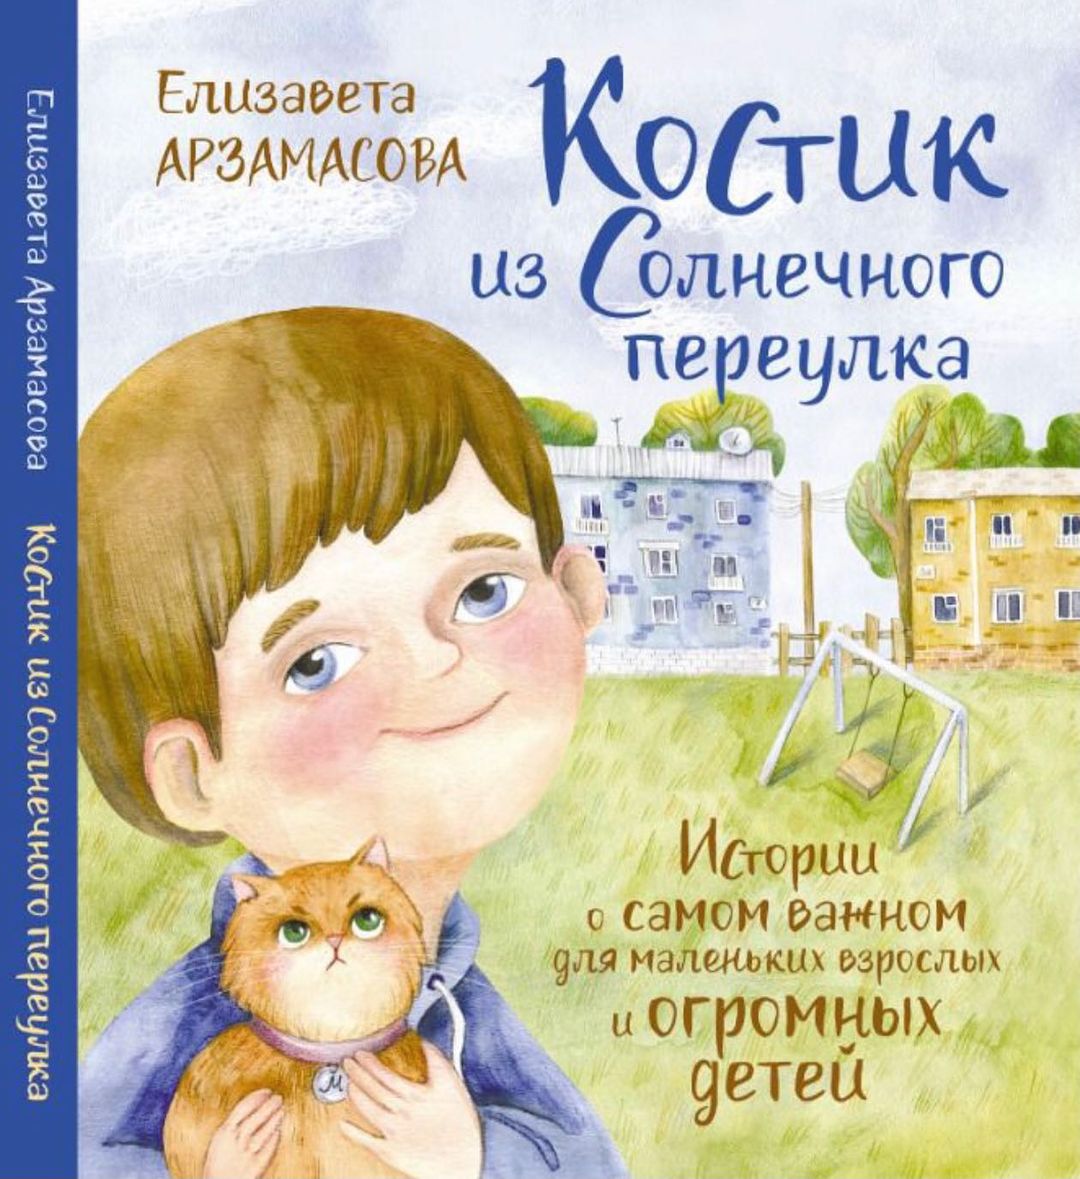 Лиза Арзамасова написала книгу для детей